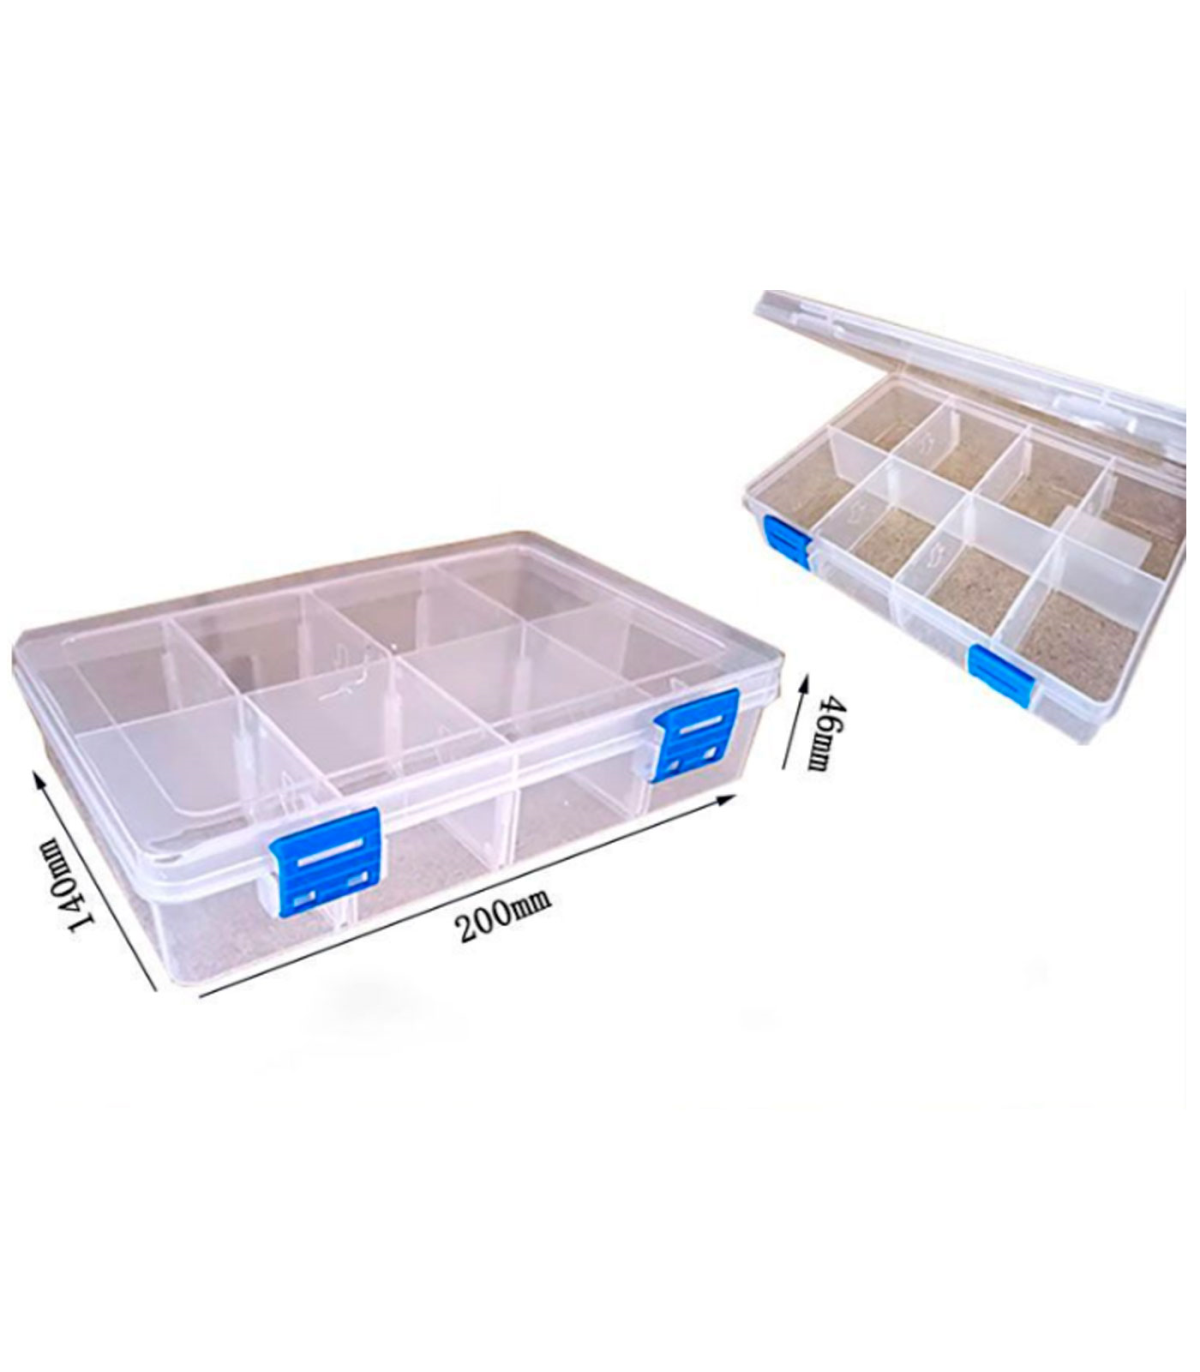 Caja organizadora multiusos nº 21 con separadores, 8 compartimentos,  plástico, almacenaje de tornillos, tuercas, accesorios pesc